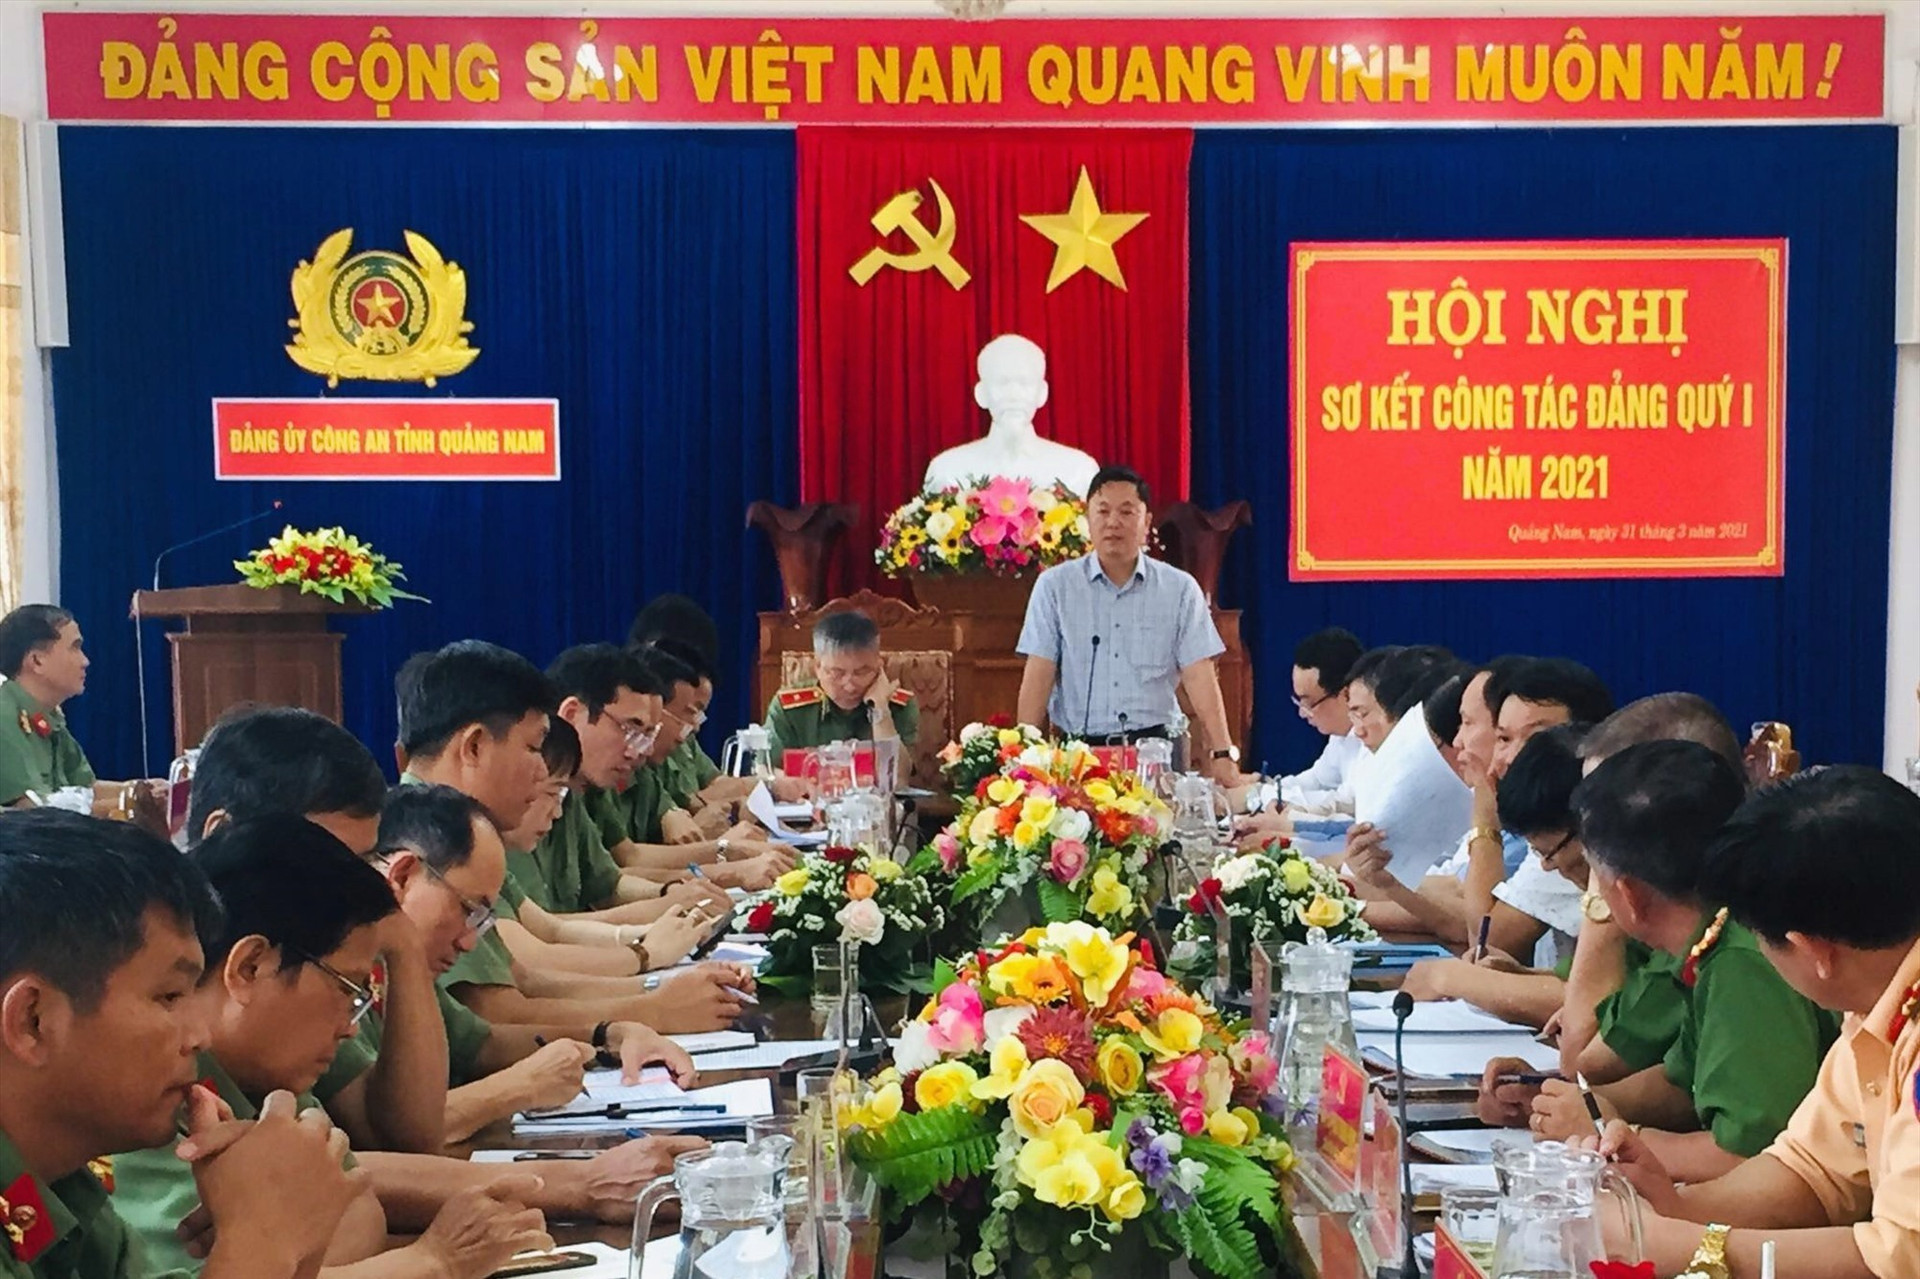 Đồng chí Lê Trí Thanh, Phó bí thư Tỉnh ủy, Chủ tịch UBND tỉnh phát biểu chỉ đạo tại Hội nghị.